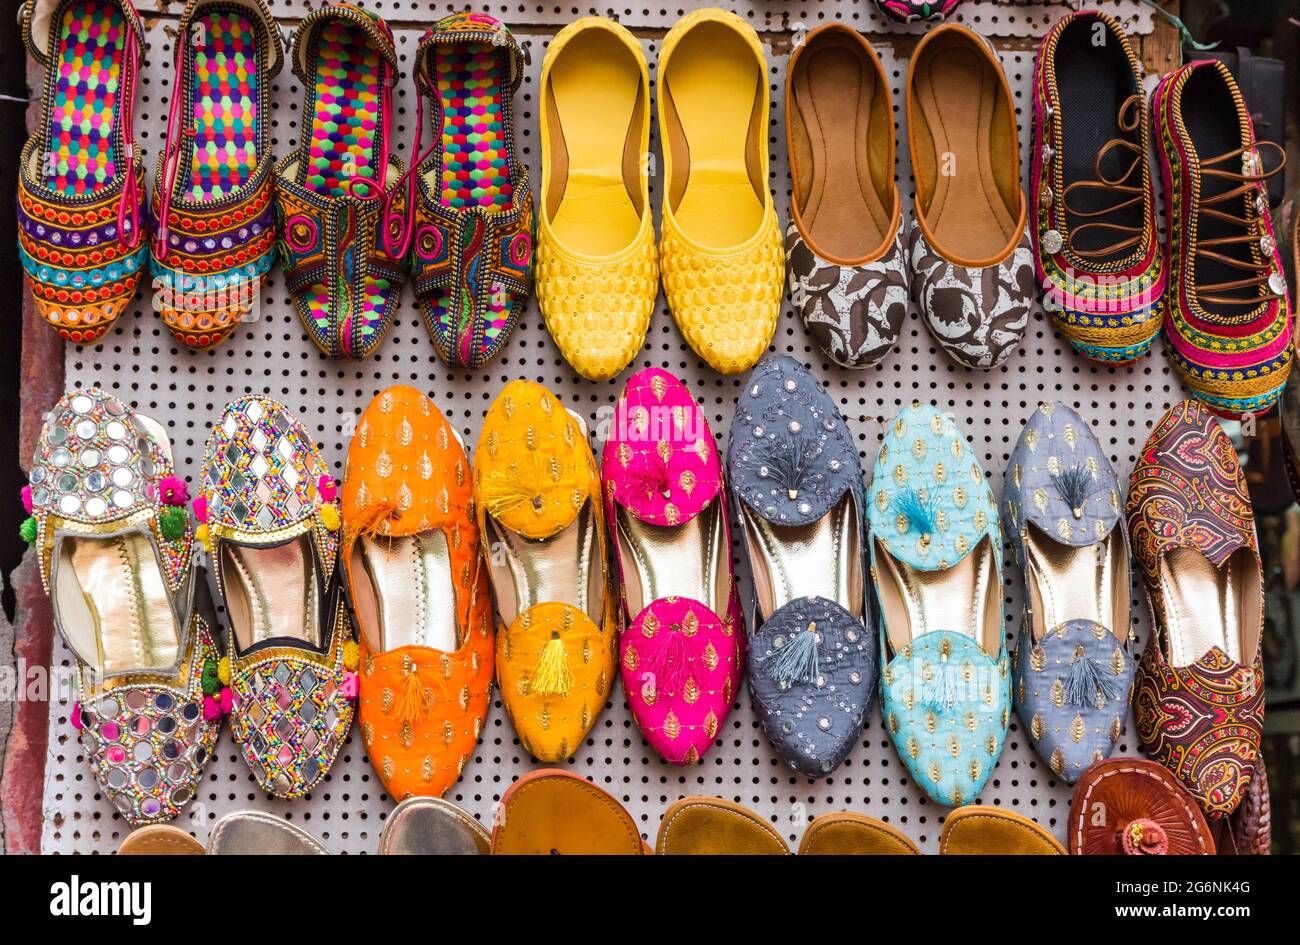 Buy Mens Wedding Footwear Online at Best Prices in India at Tasvacom